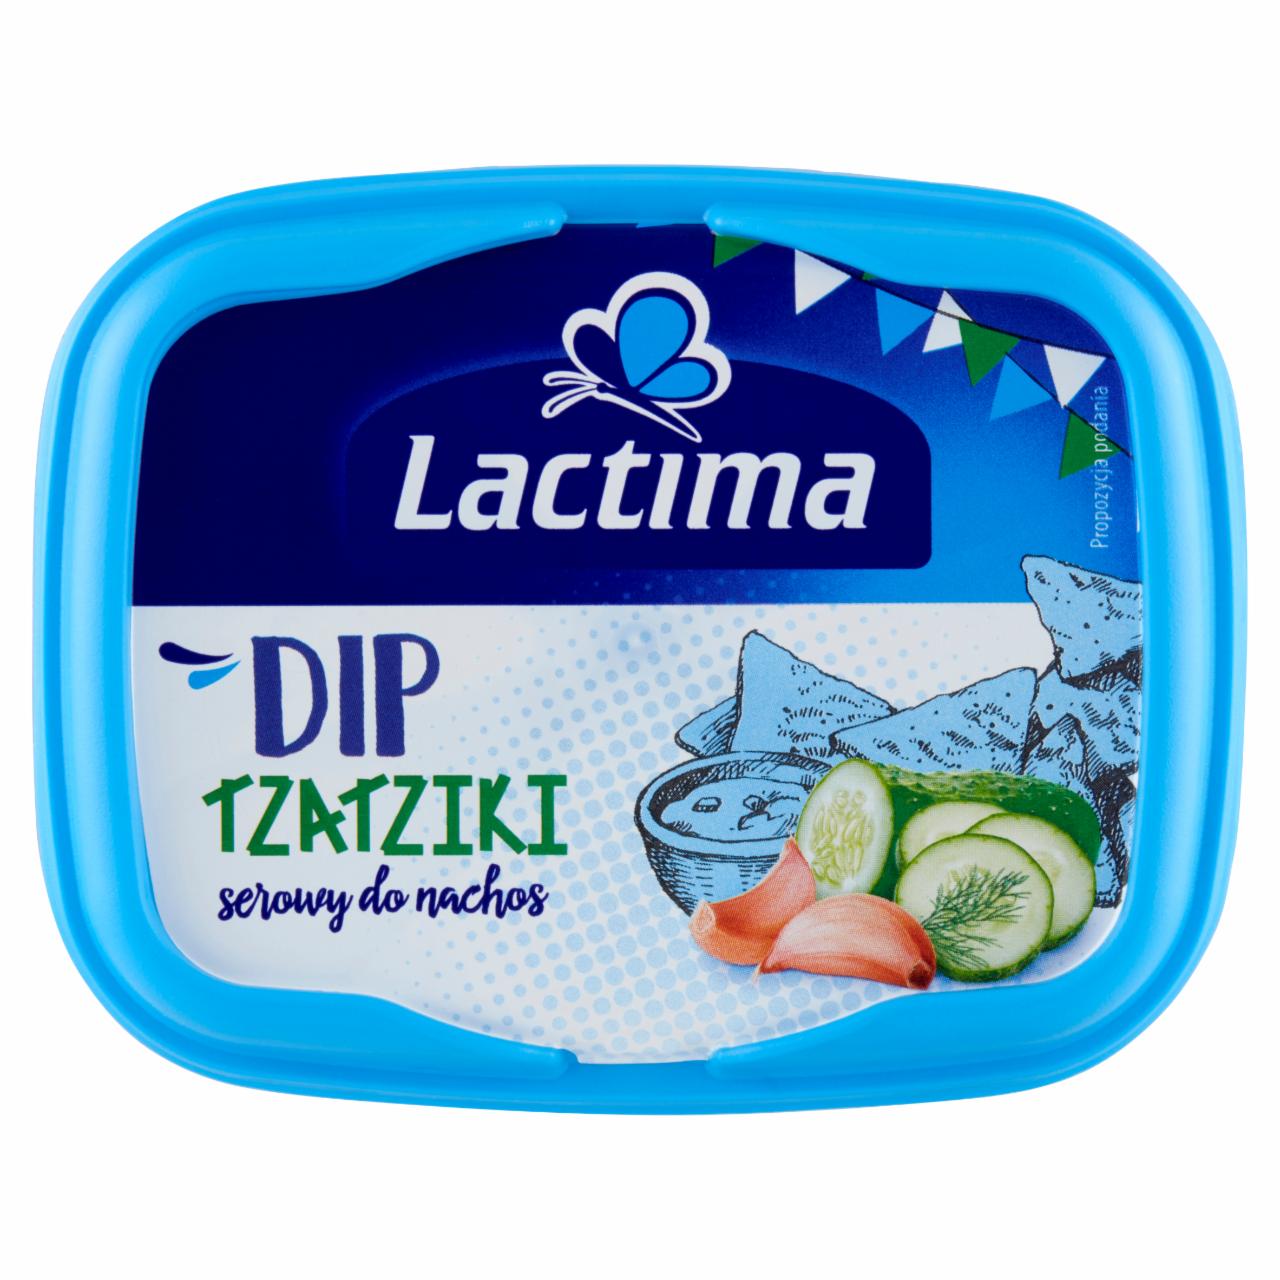 Zdjęcia - Lactima Dip serowy do nachos Tzatziki 150 g